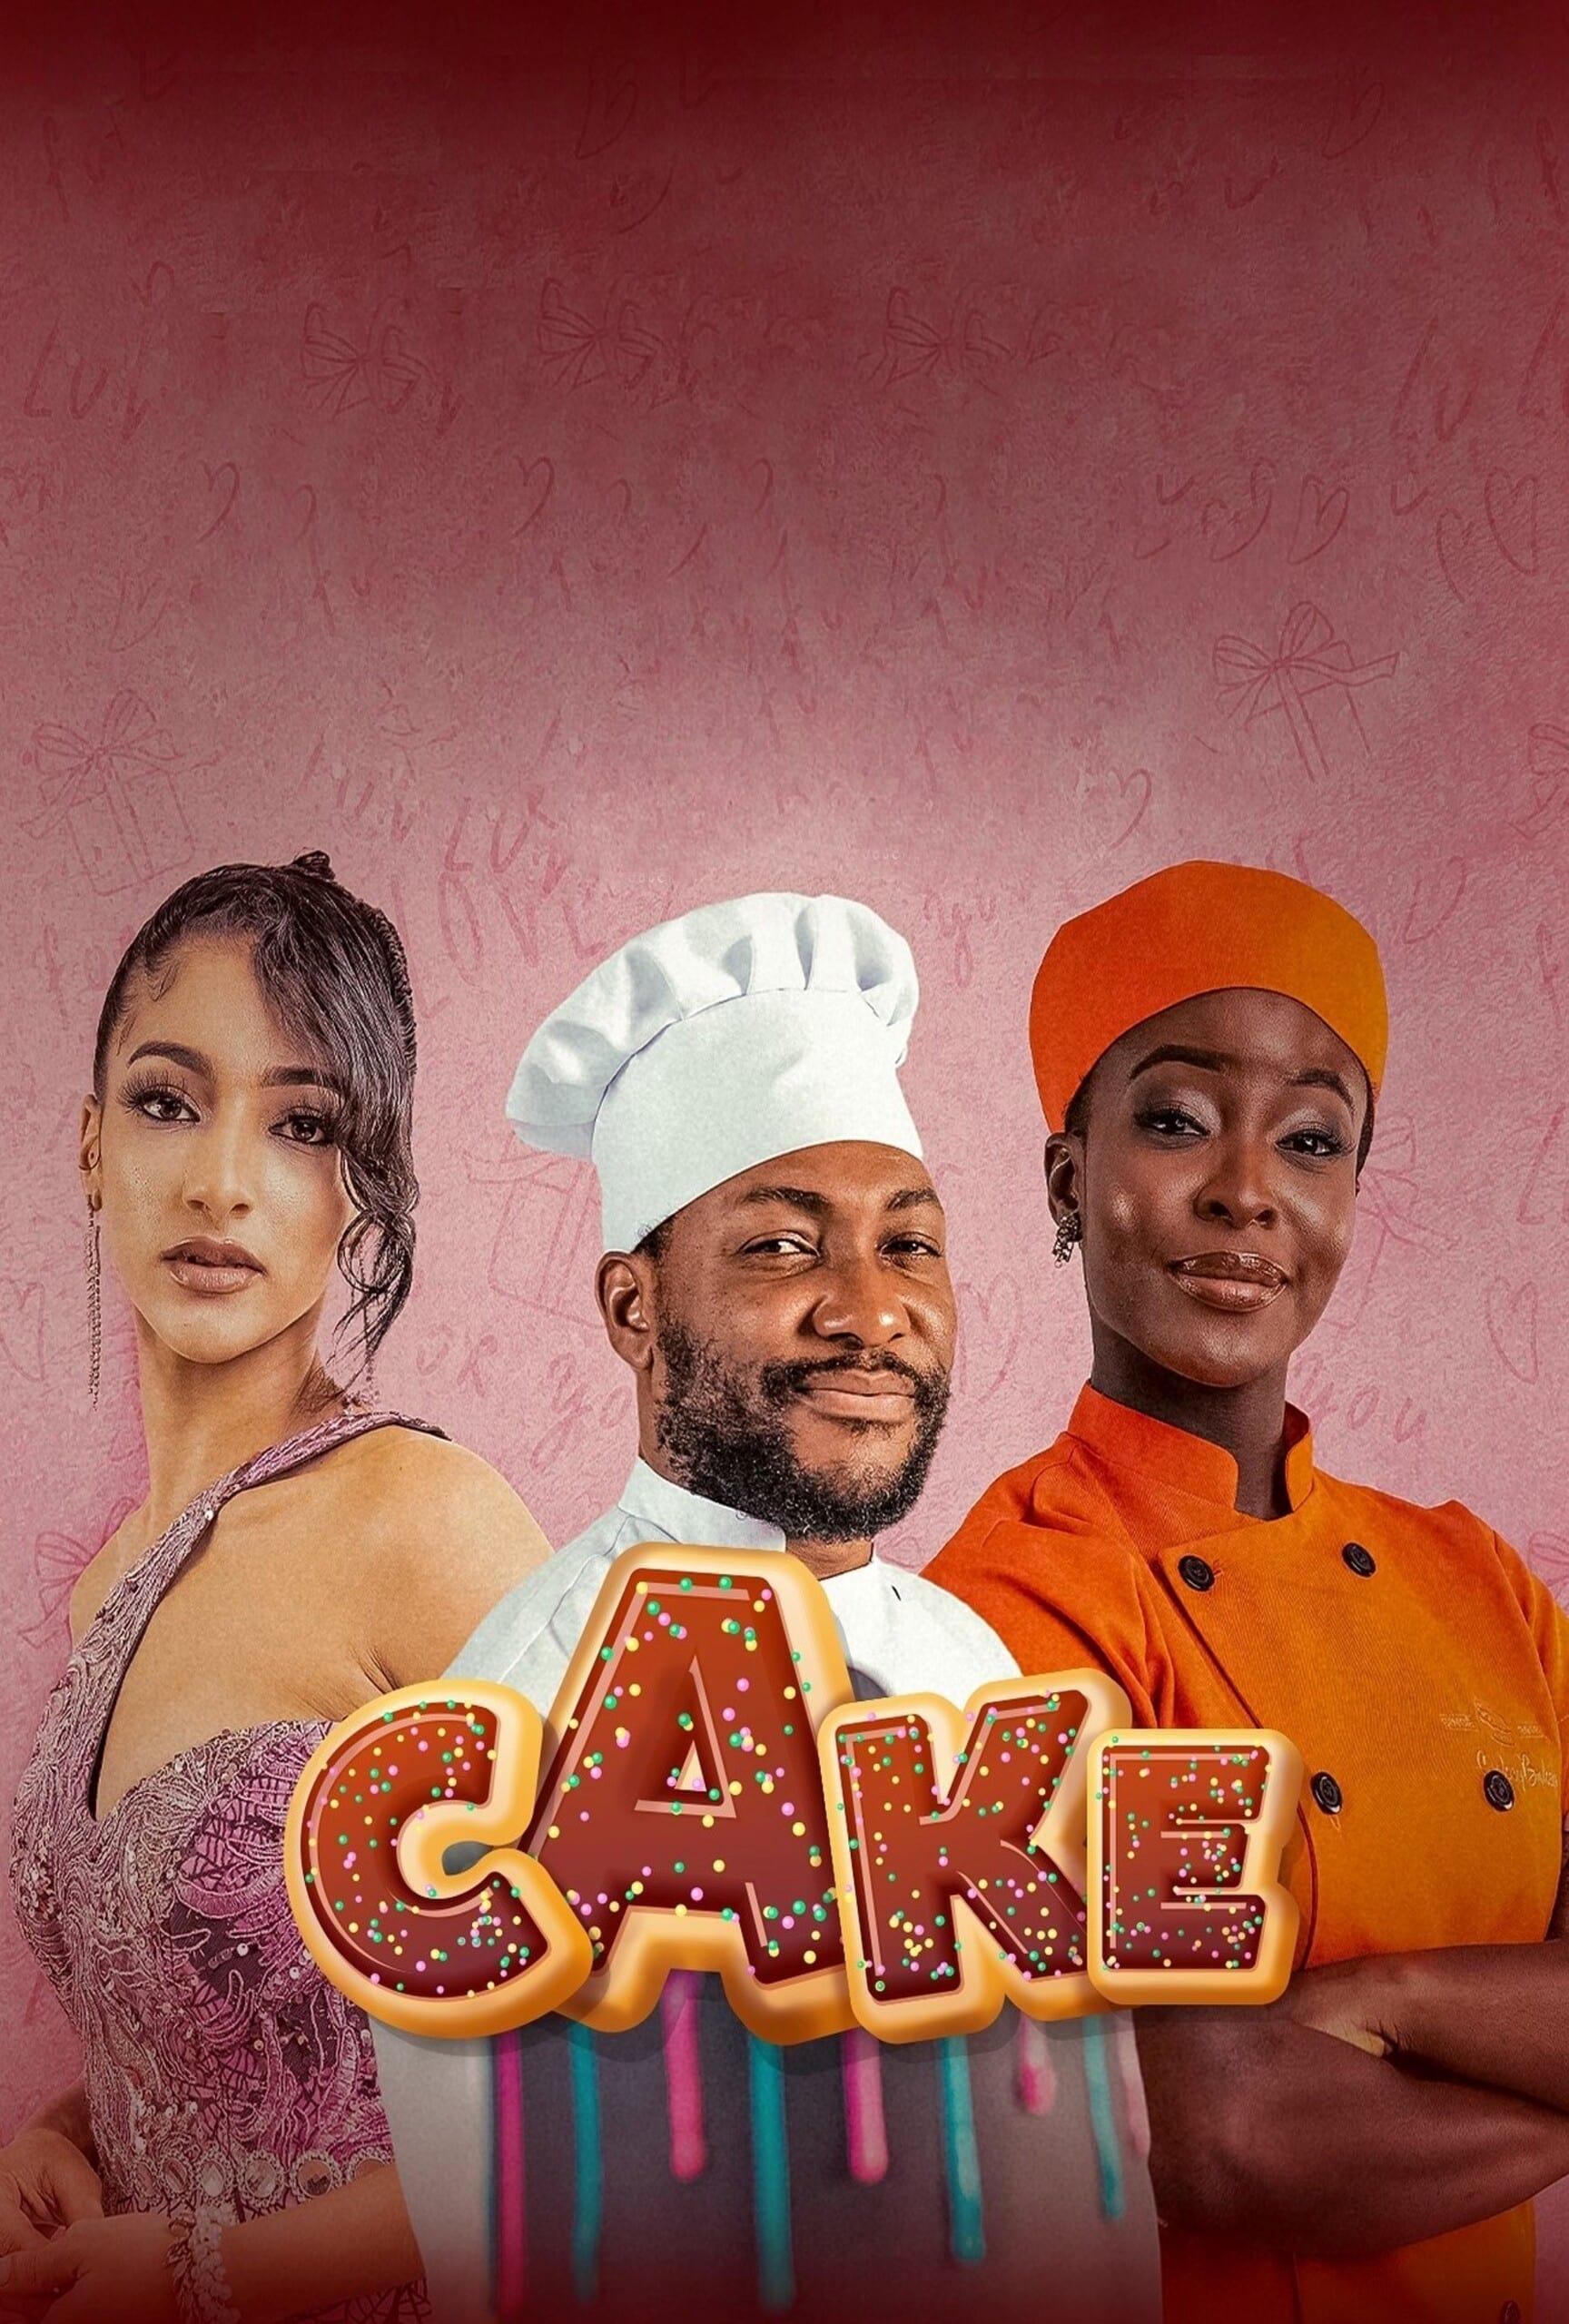 Cake poster